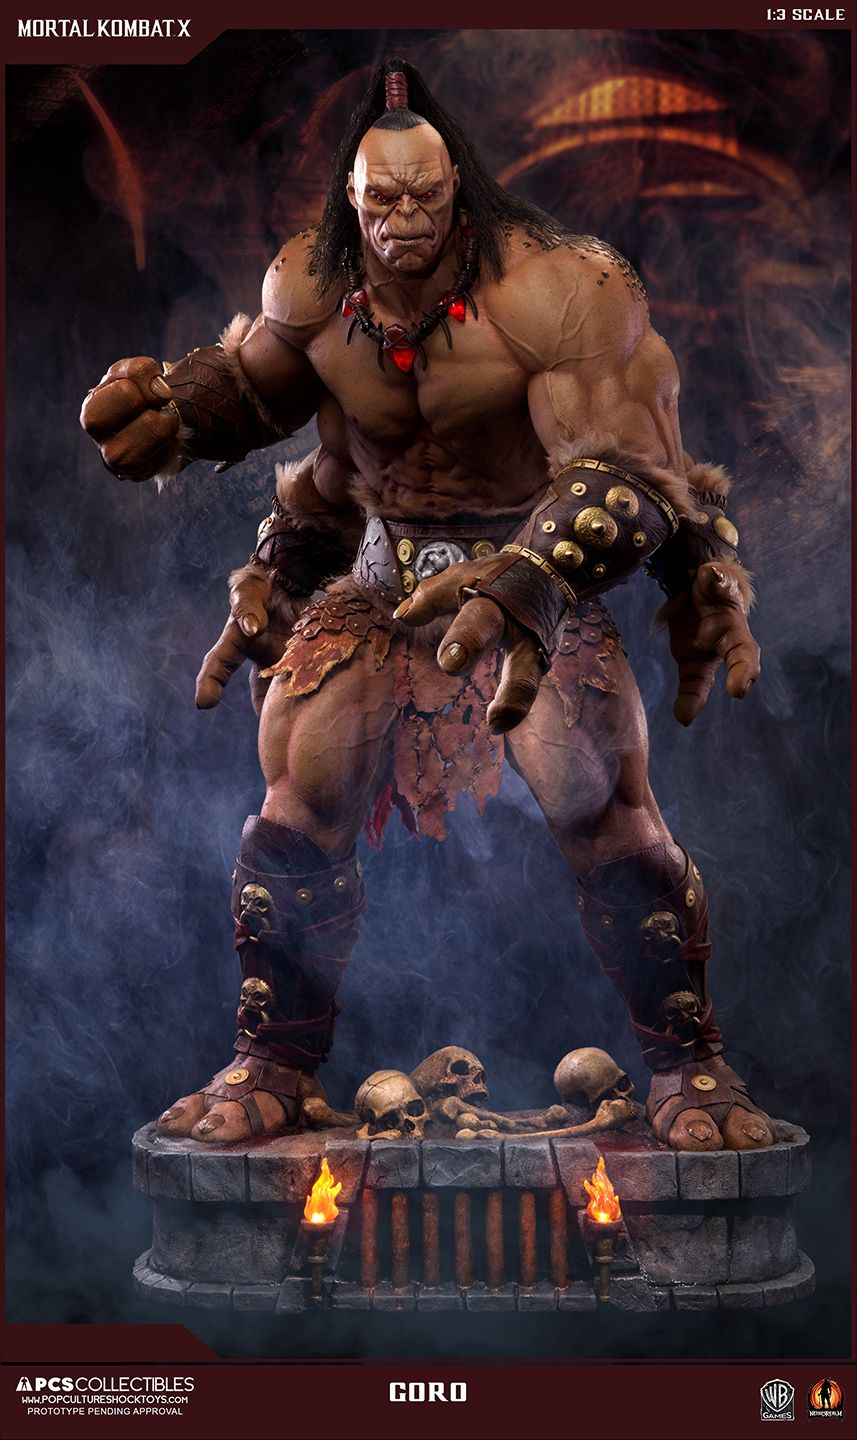 Mortal Kombat X Goro Statue Photo And Pre Order Info